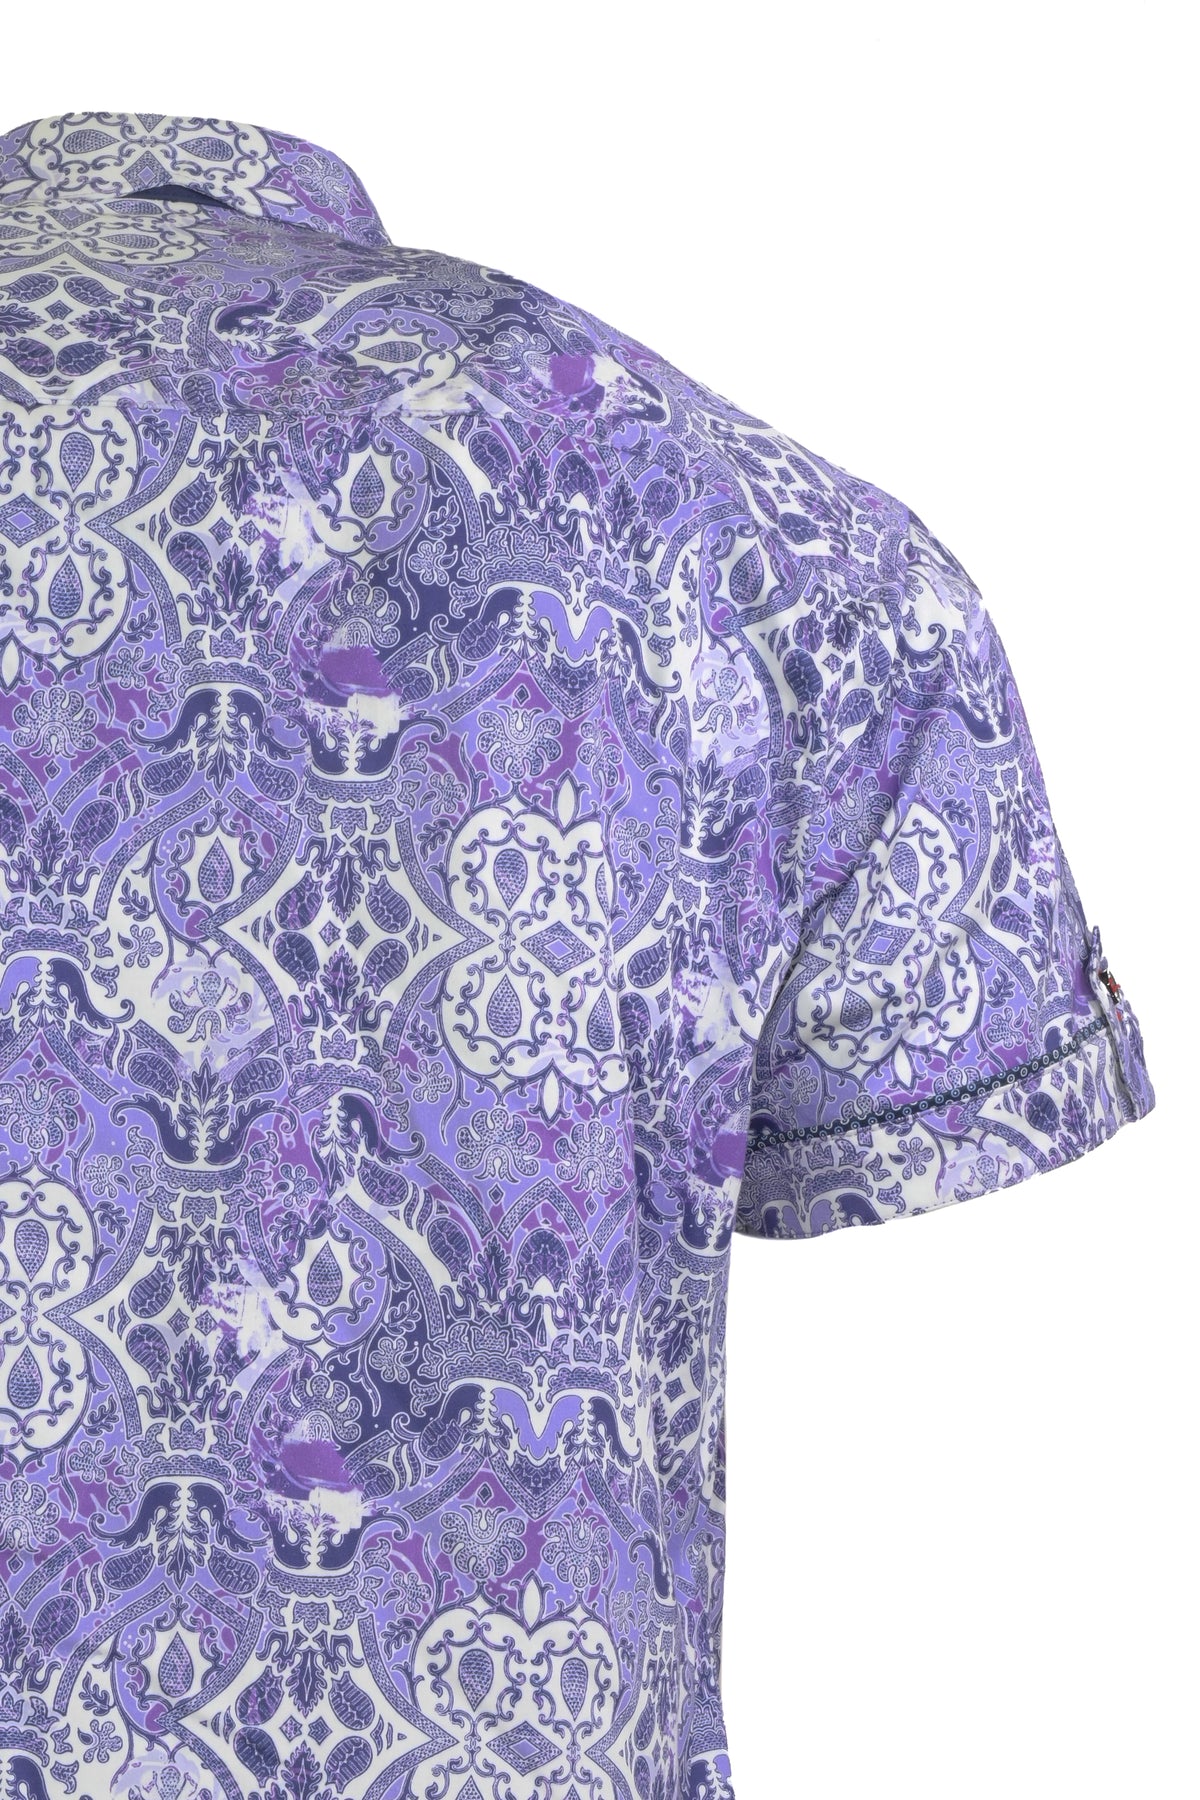 Au Noir Tacoma Short Sleeve Shirt Lavender